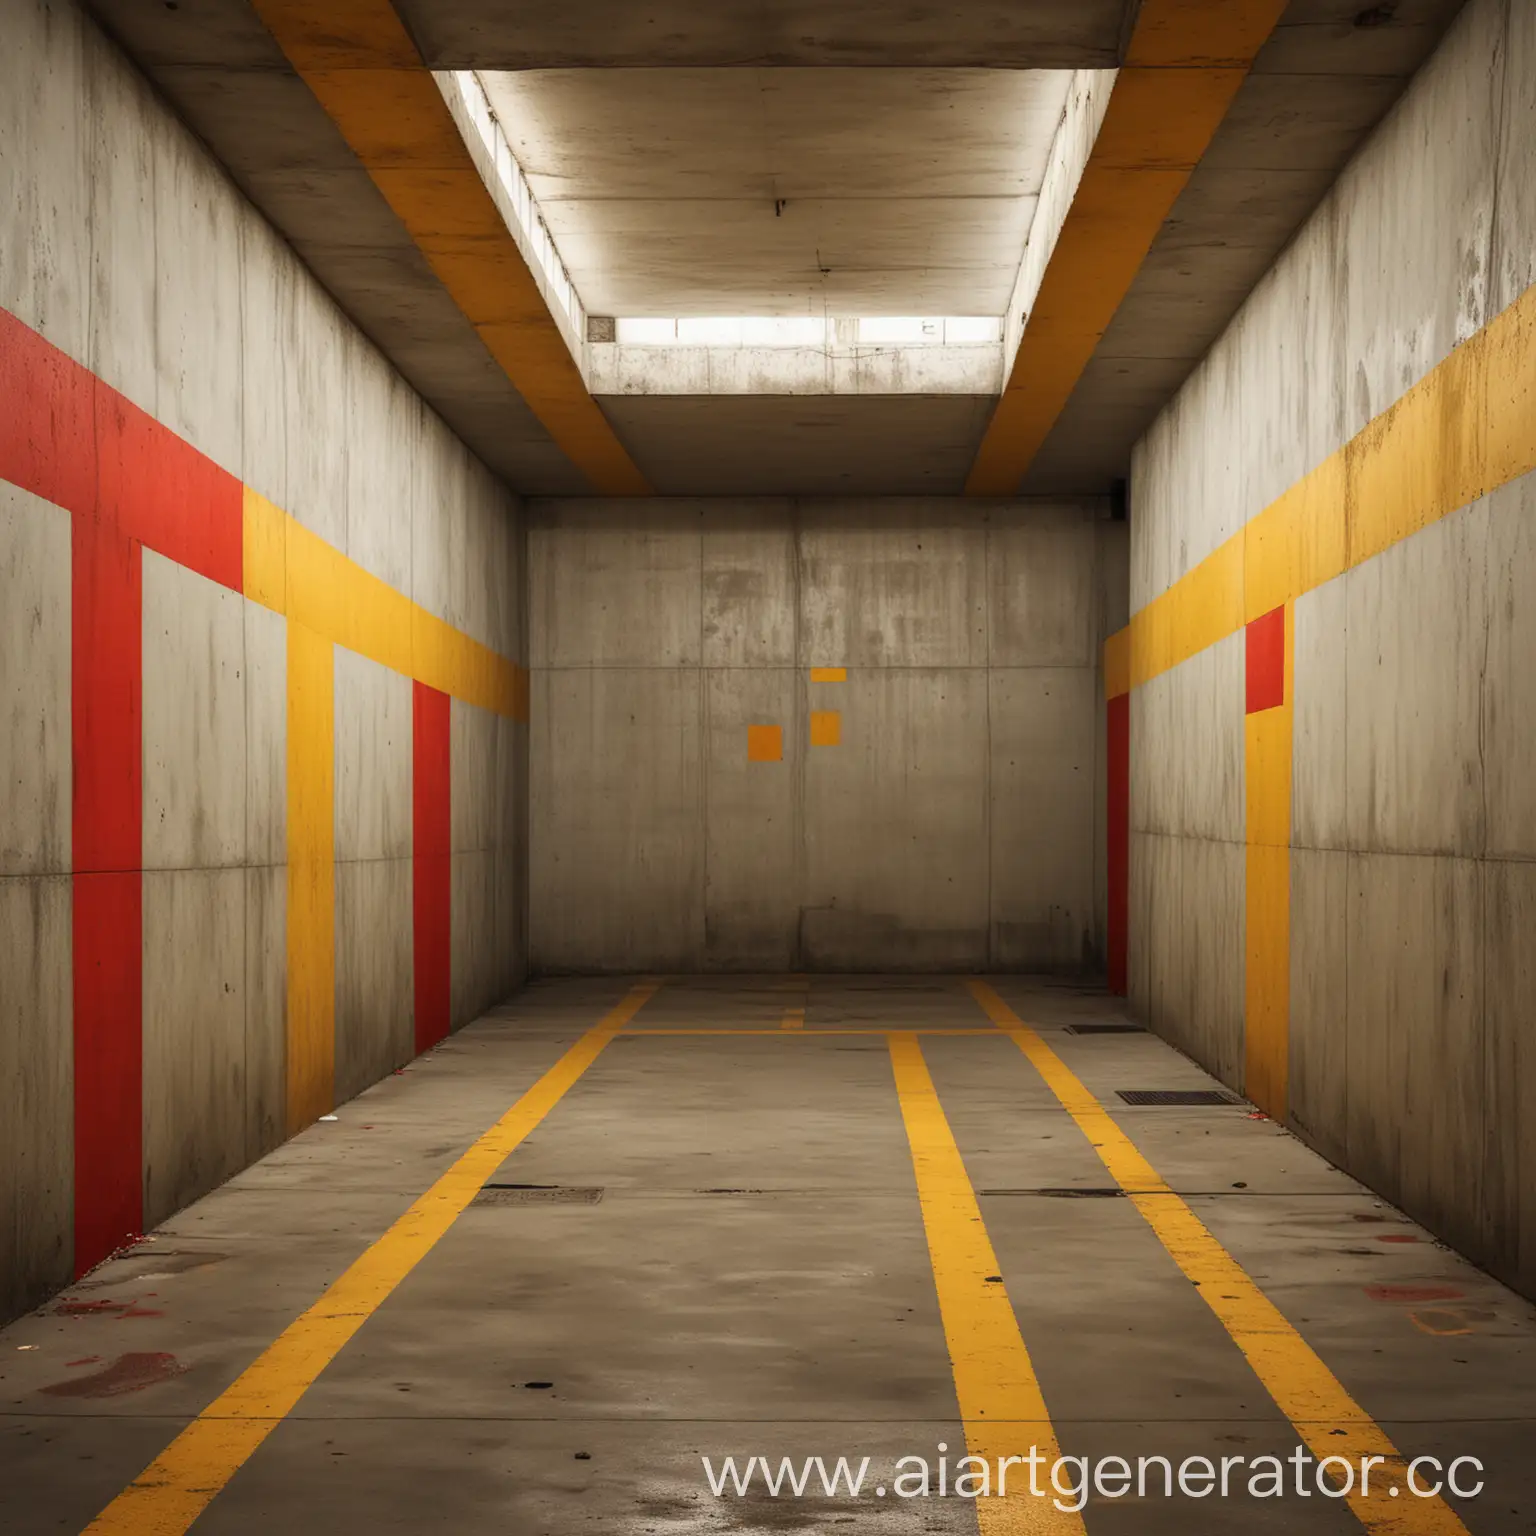 подземная парковка, паркинг, автомобиль, малевичь, абстракционизм на стенах, золото, желтый, красный, бетон